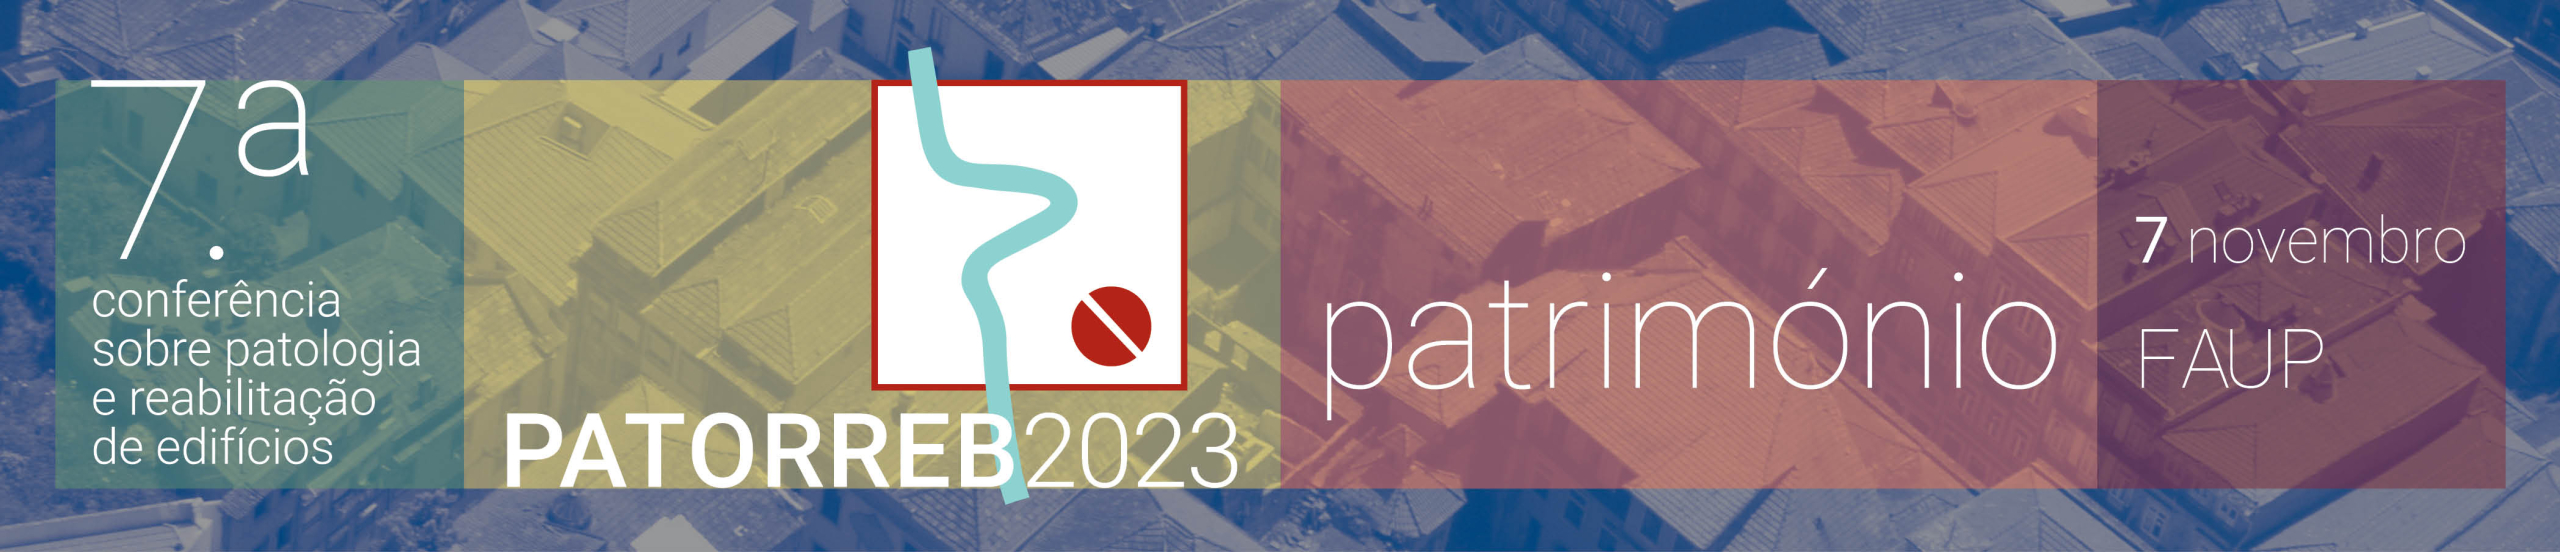 Patorreb 2023 - Património